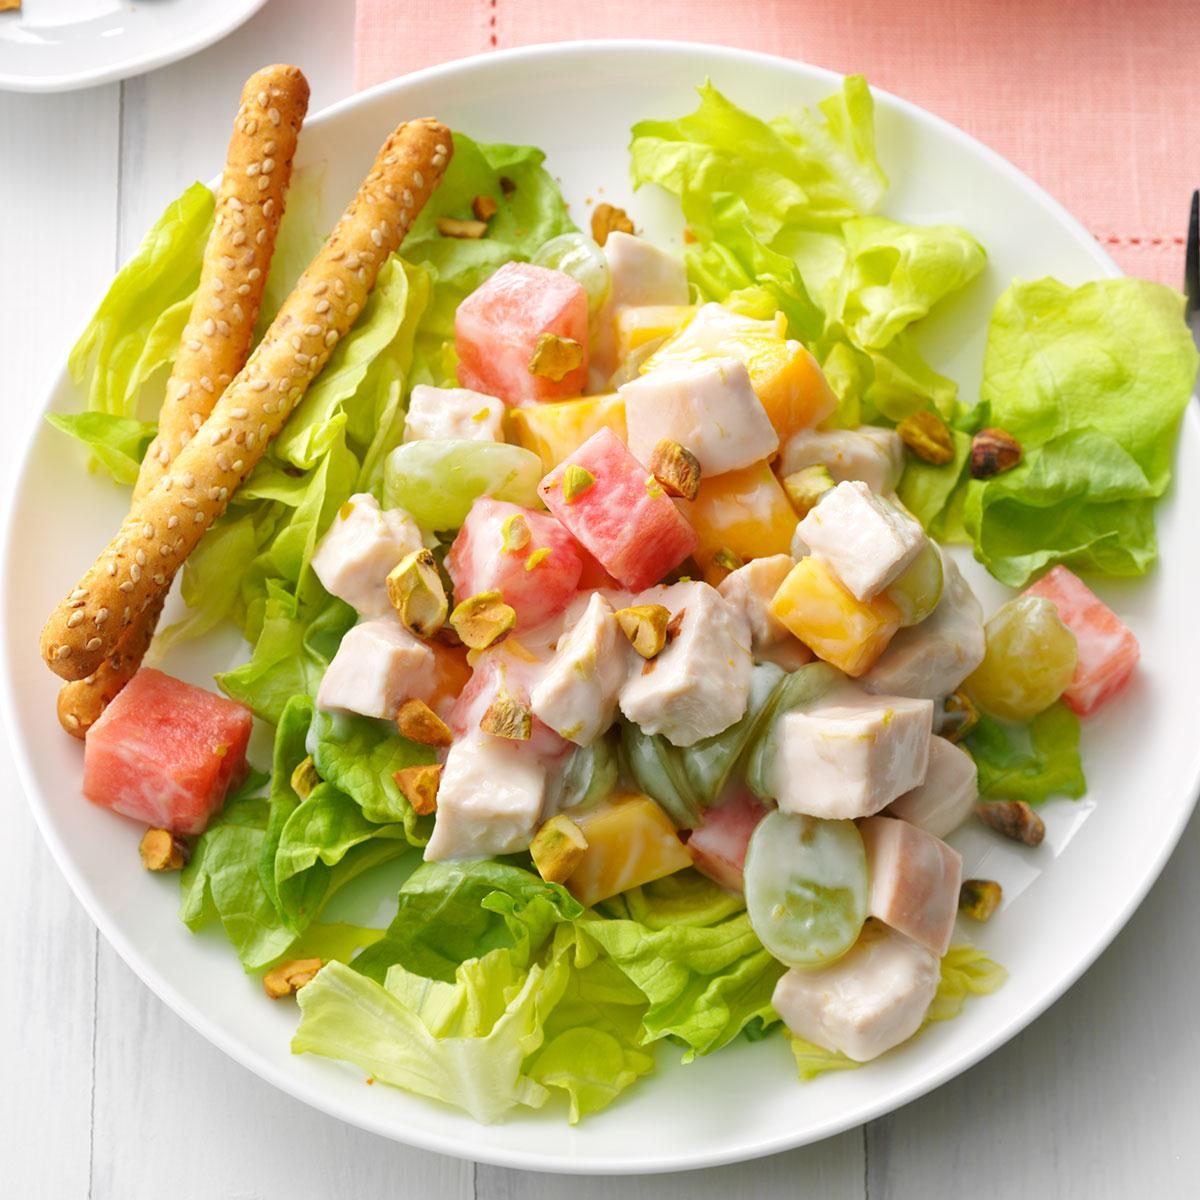 Summer Splash Chicken Salad Recipe: How to Make It